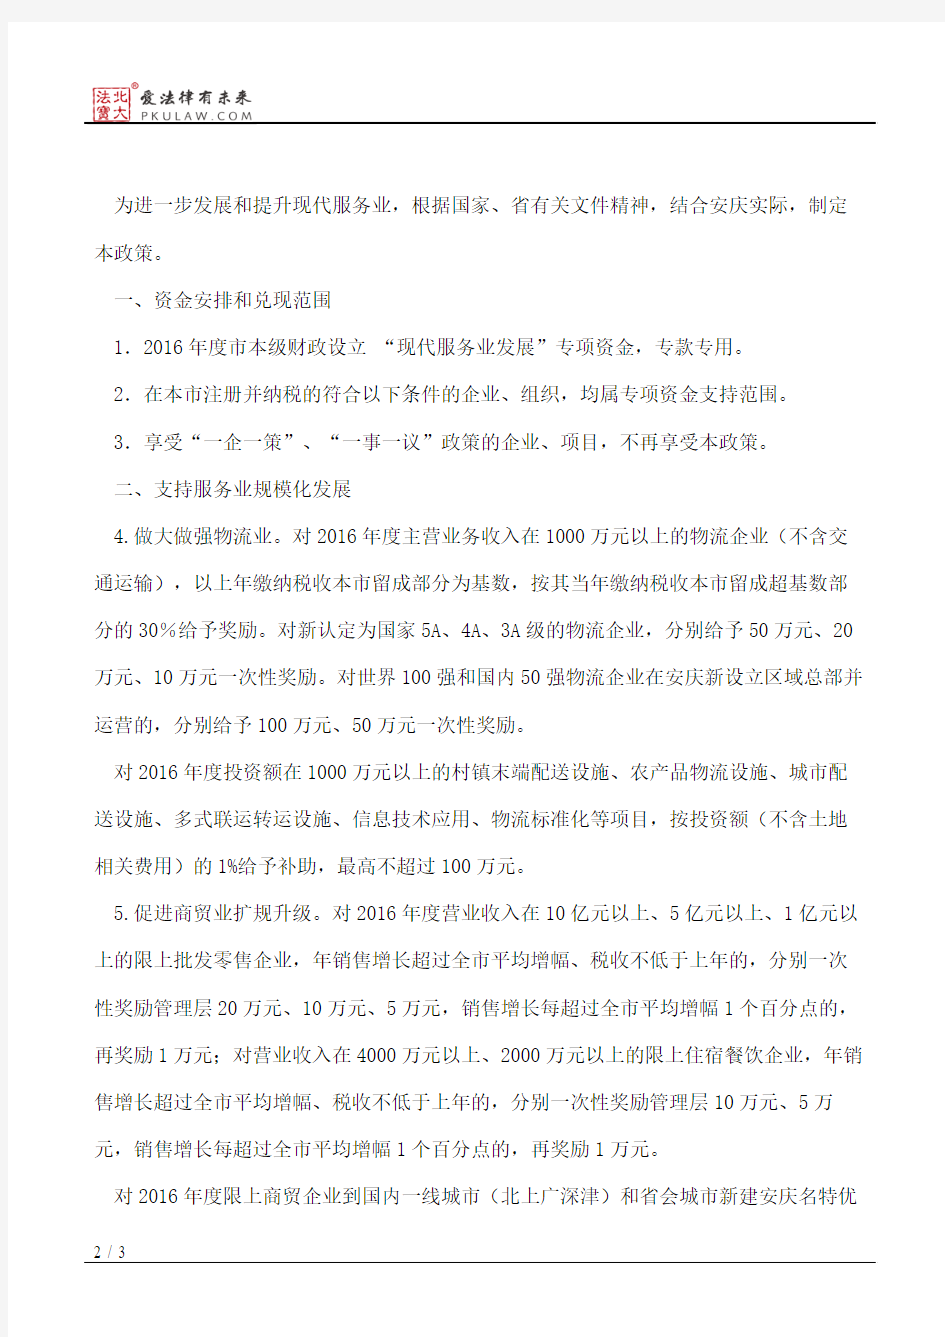 安庆市人民政府关于印发安庆市2016年推动现代服务业加快发展若干